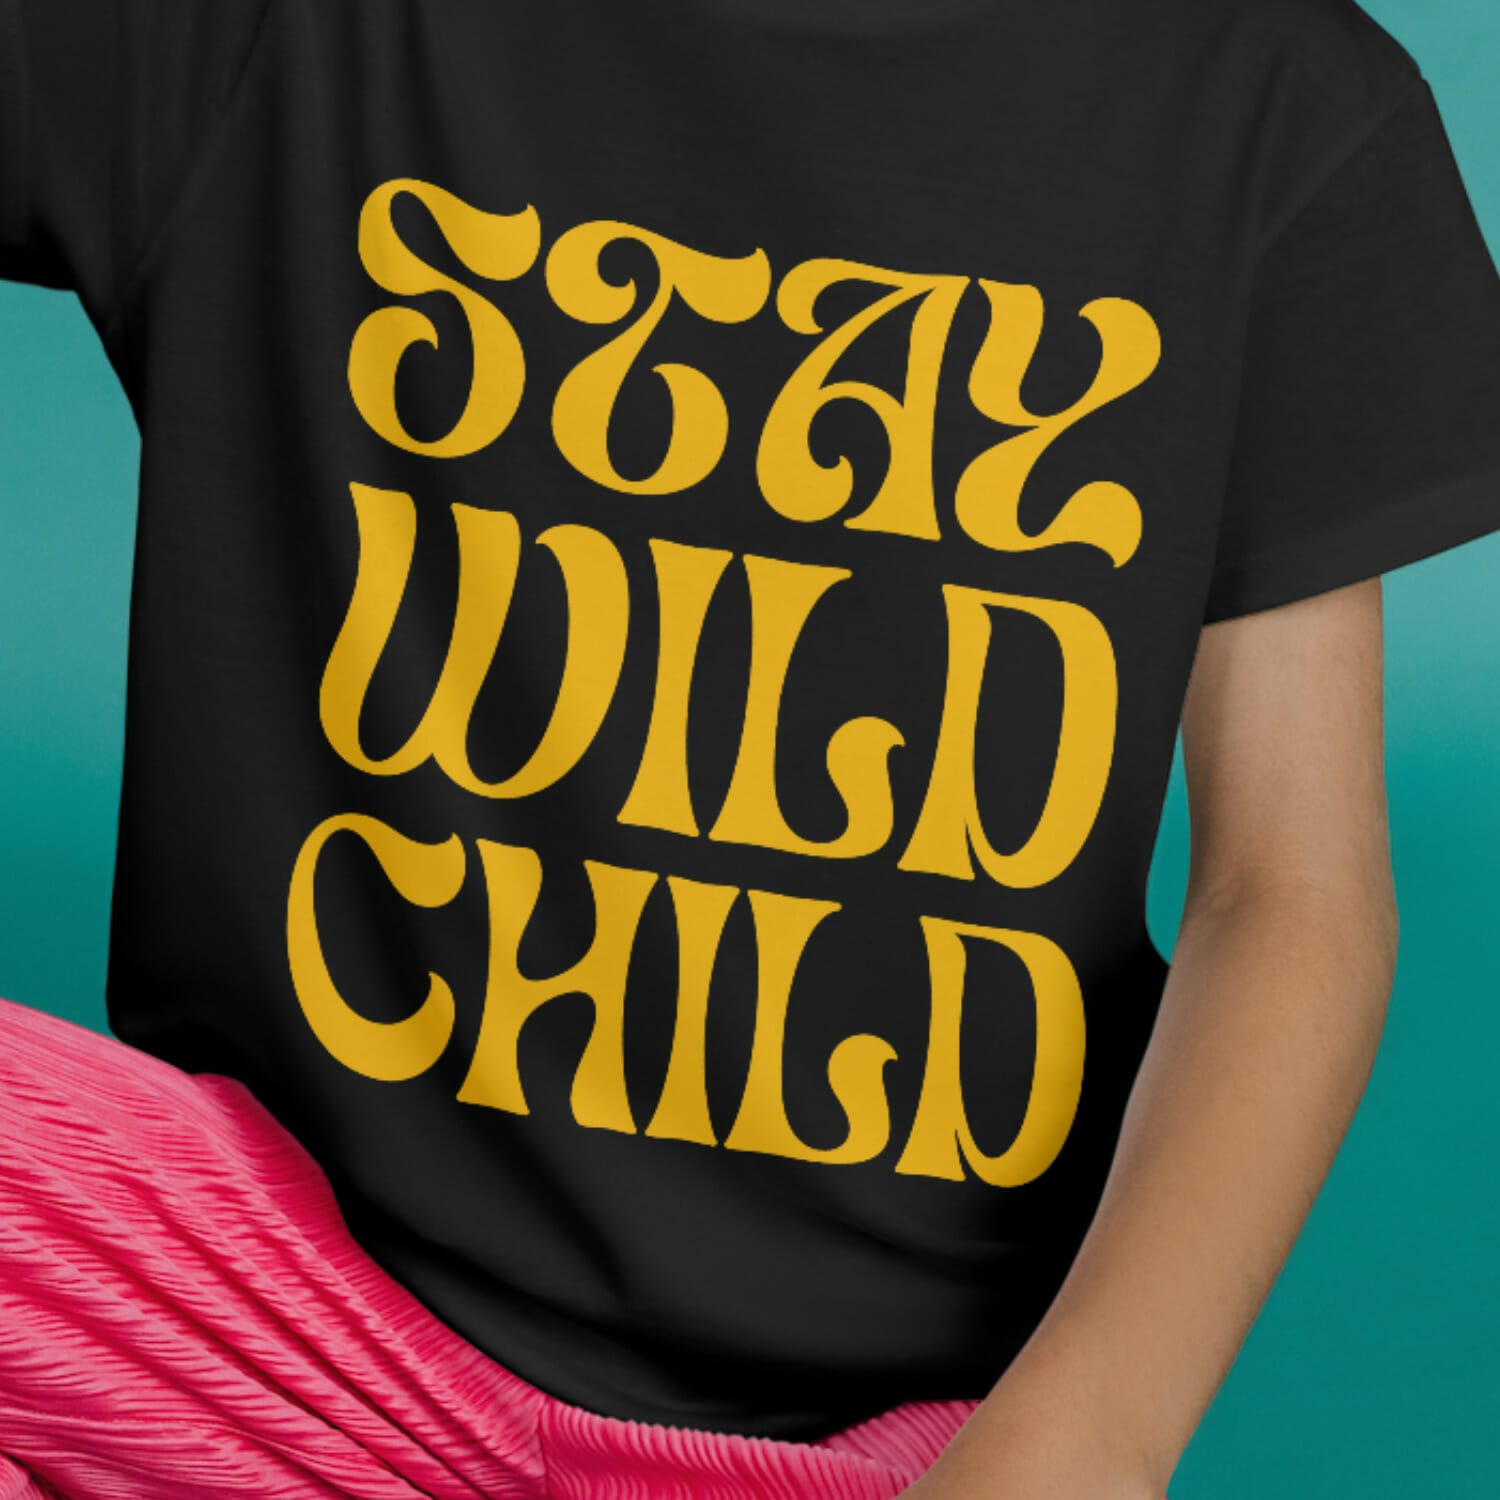 Stay wild child Kids Tshirt design